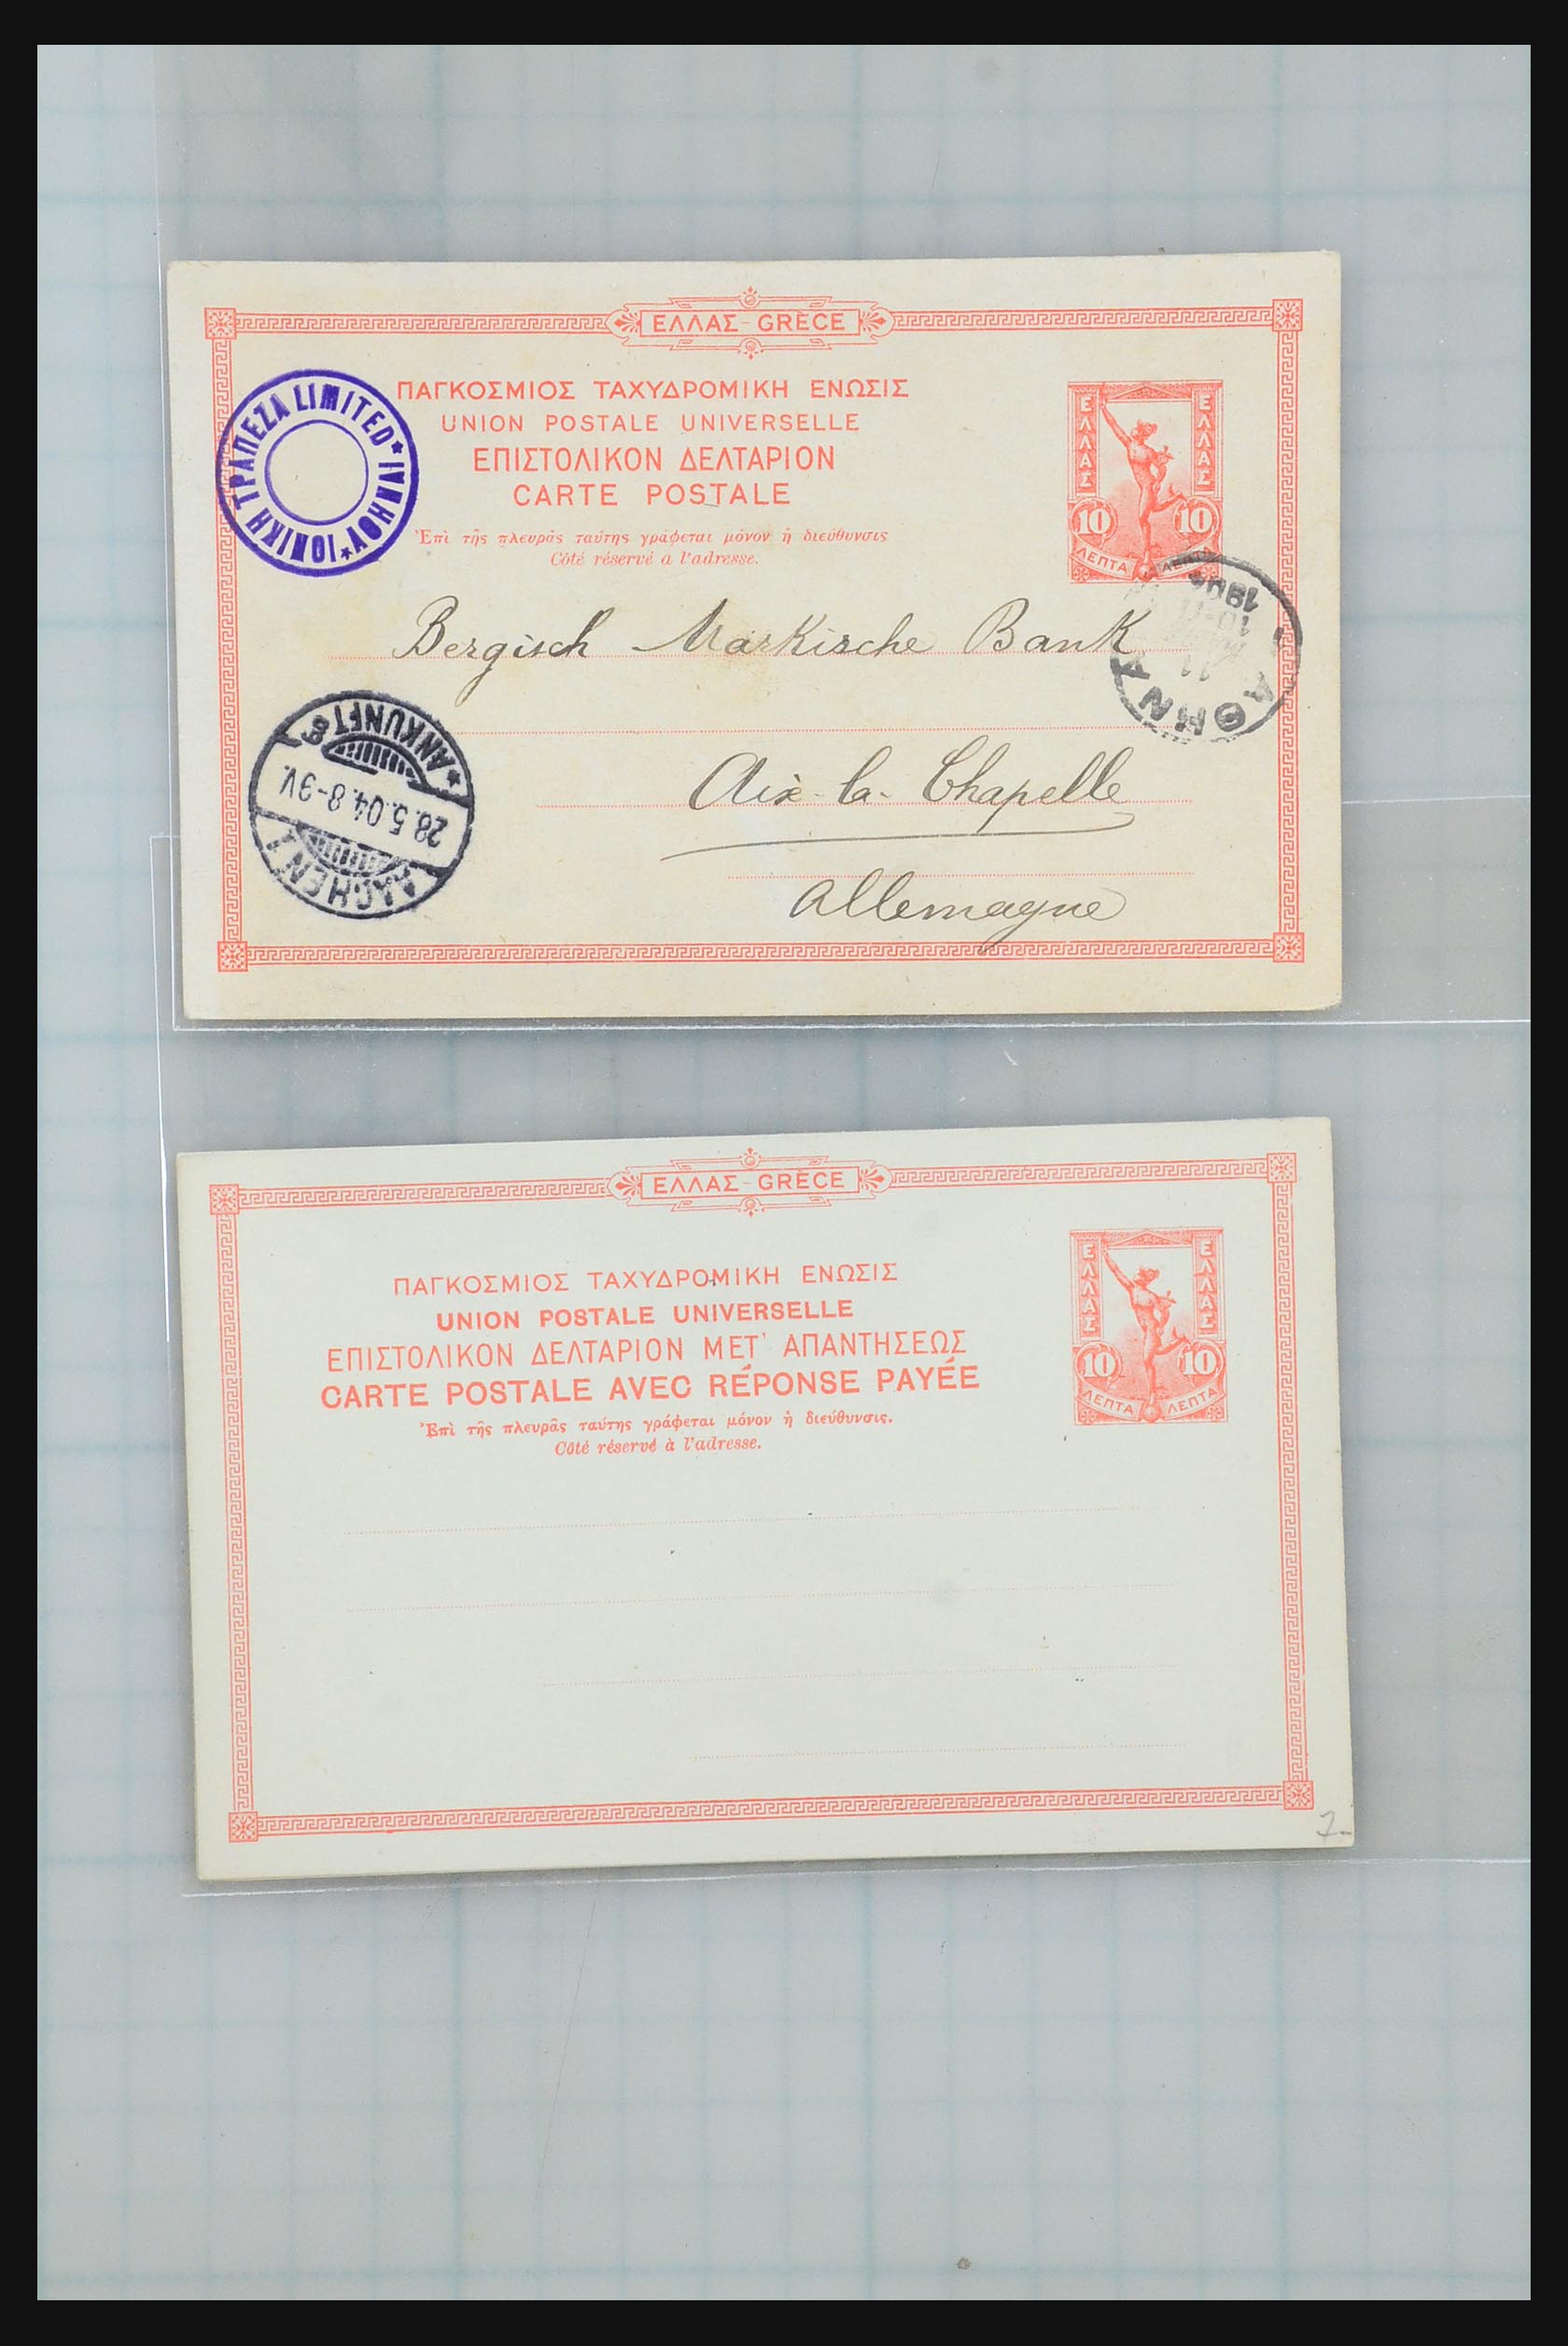 31358 027 - 31358 Portugal/Luxemburg/Griekenland brieven 1880-1960.